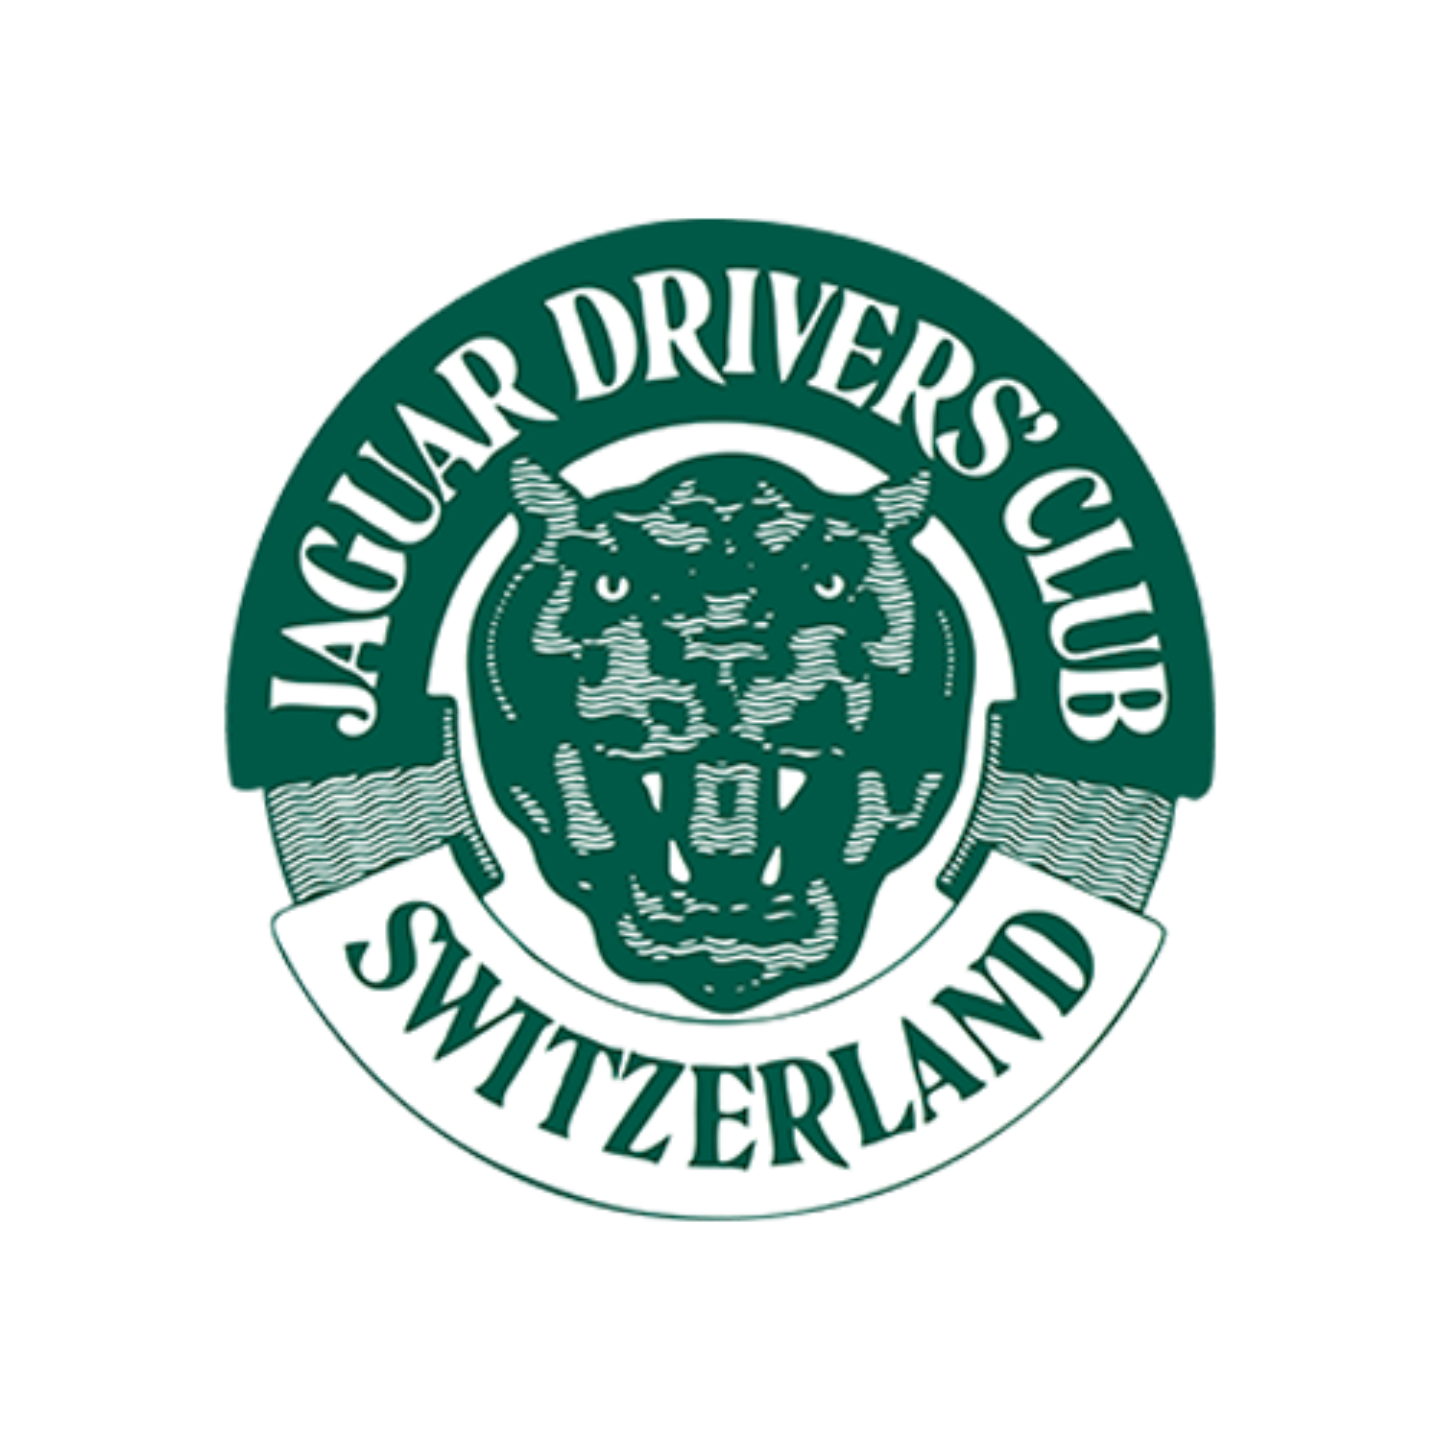 Jaguar drivers club switzerland